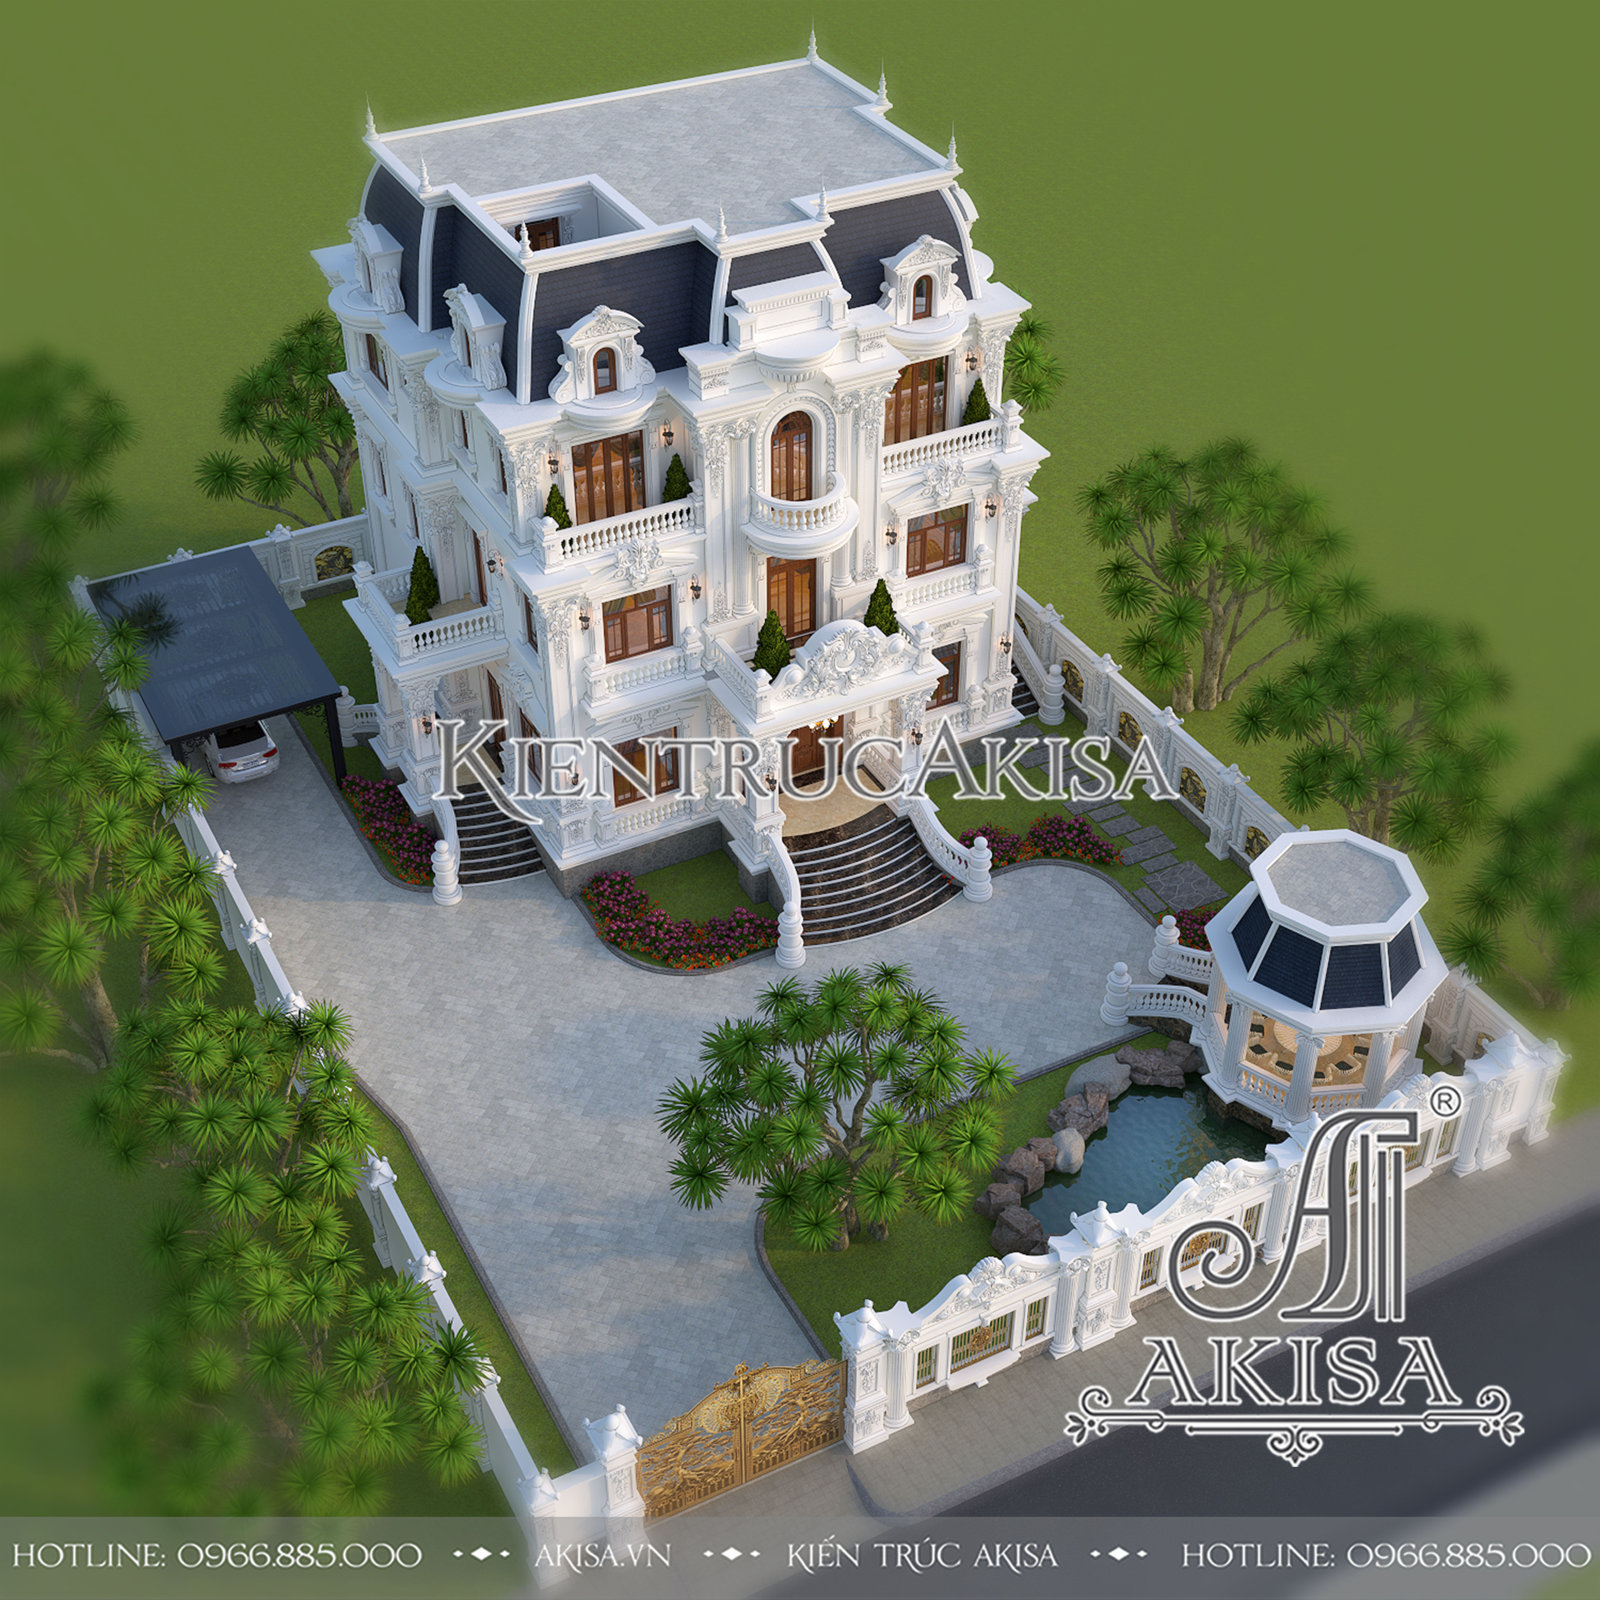 Quy hoạch tổng thể mẫu biệt thự cổ điển 3 tầng kiểu Pháp từ trên cao